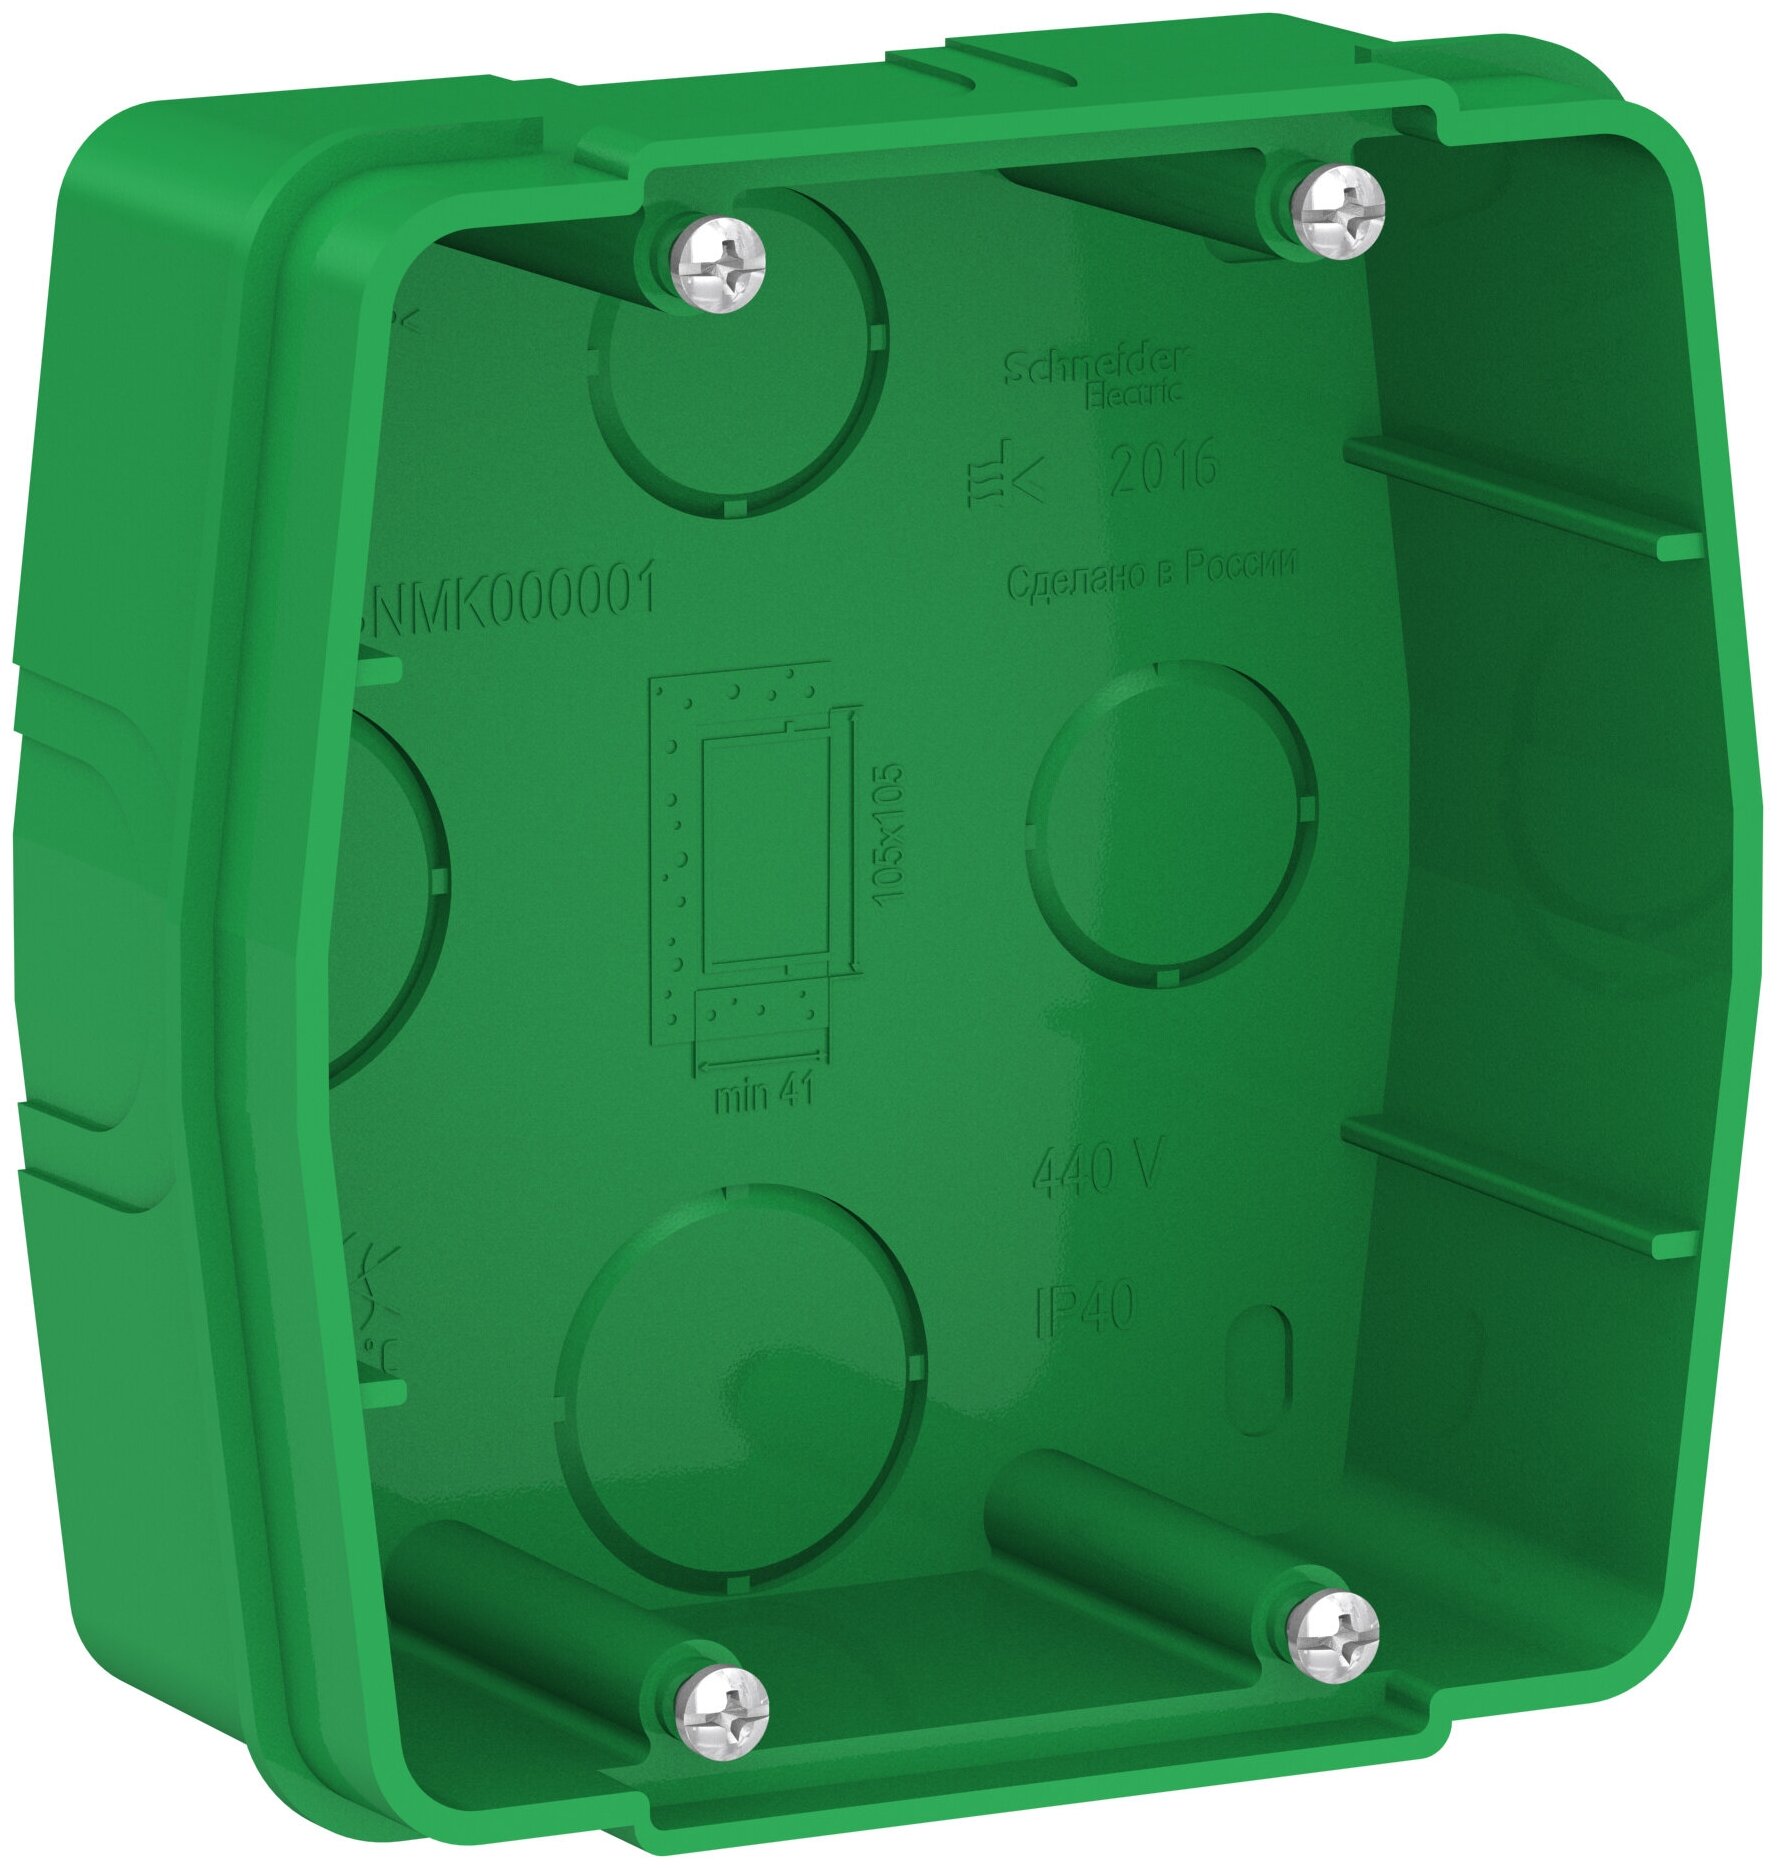 Серия Schneider electric BLANCA коробка монтажная для силовых розеток, зеленый BLNMK000001